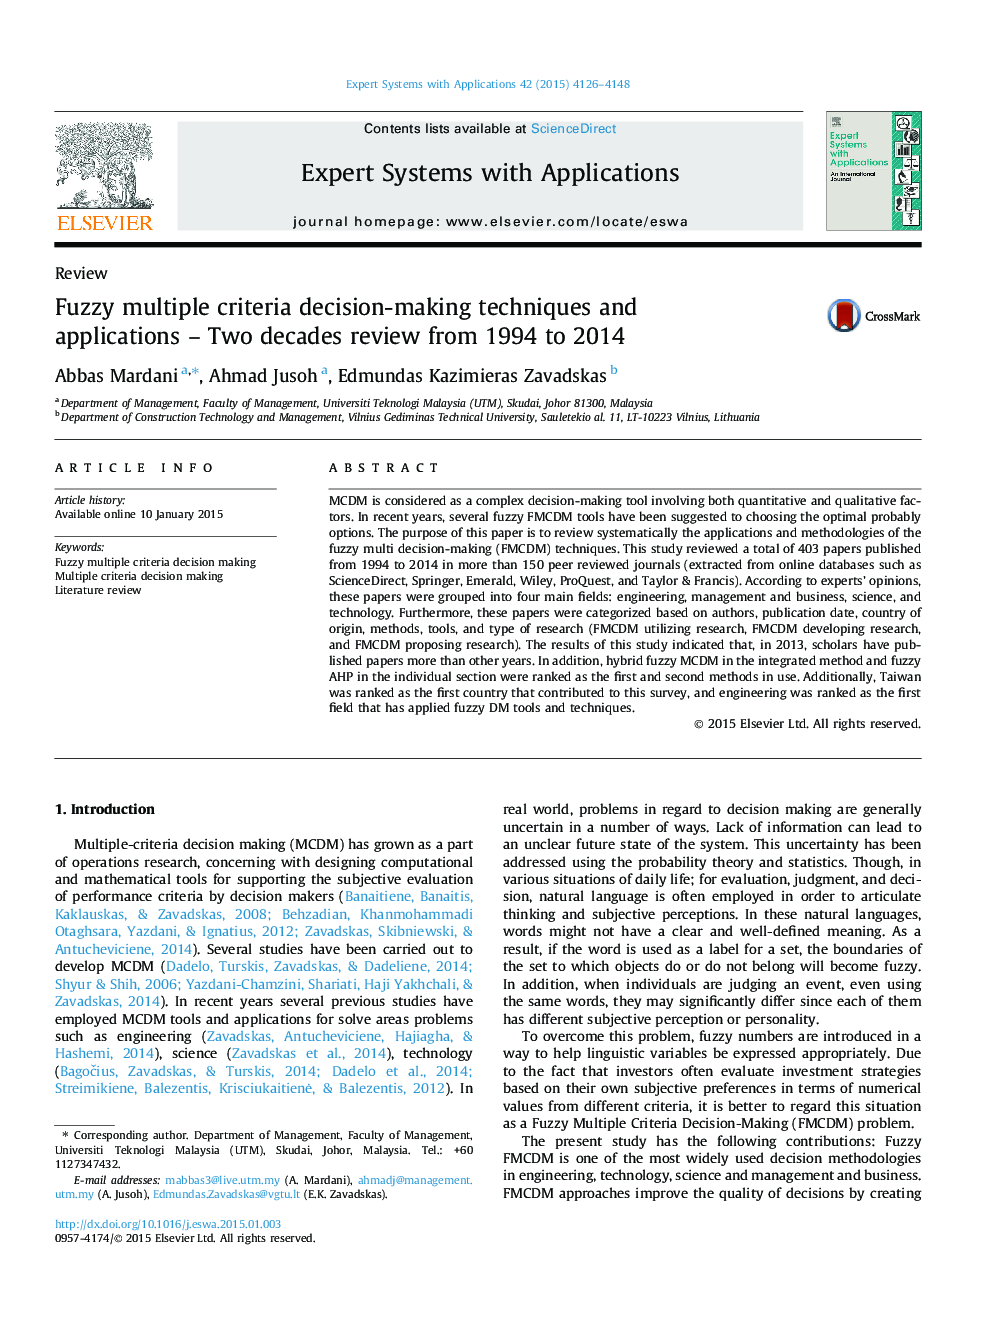 تکنیک ها و برنامه های کاربردی تصمیم گیری فازی چندگانه - بررسی دو دهه از 1994 تا 2014 